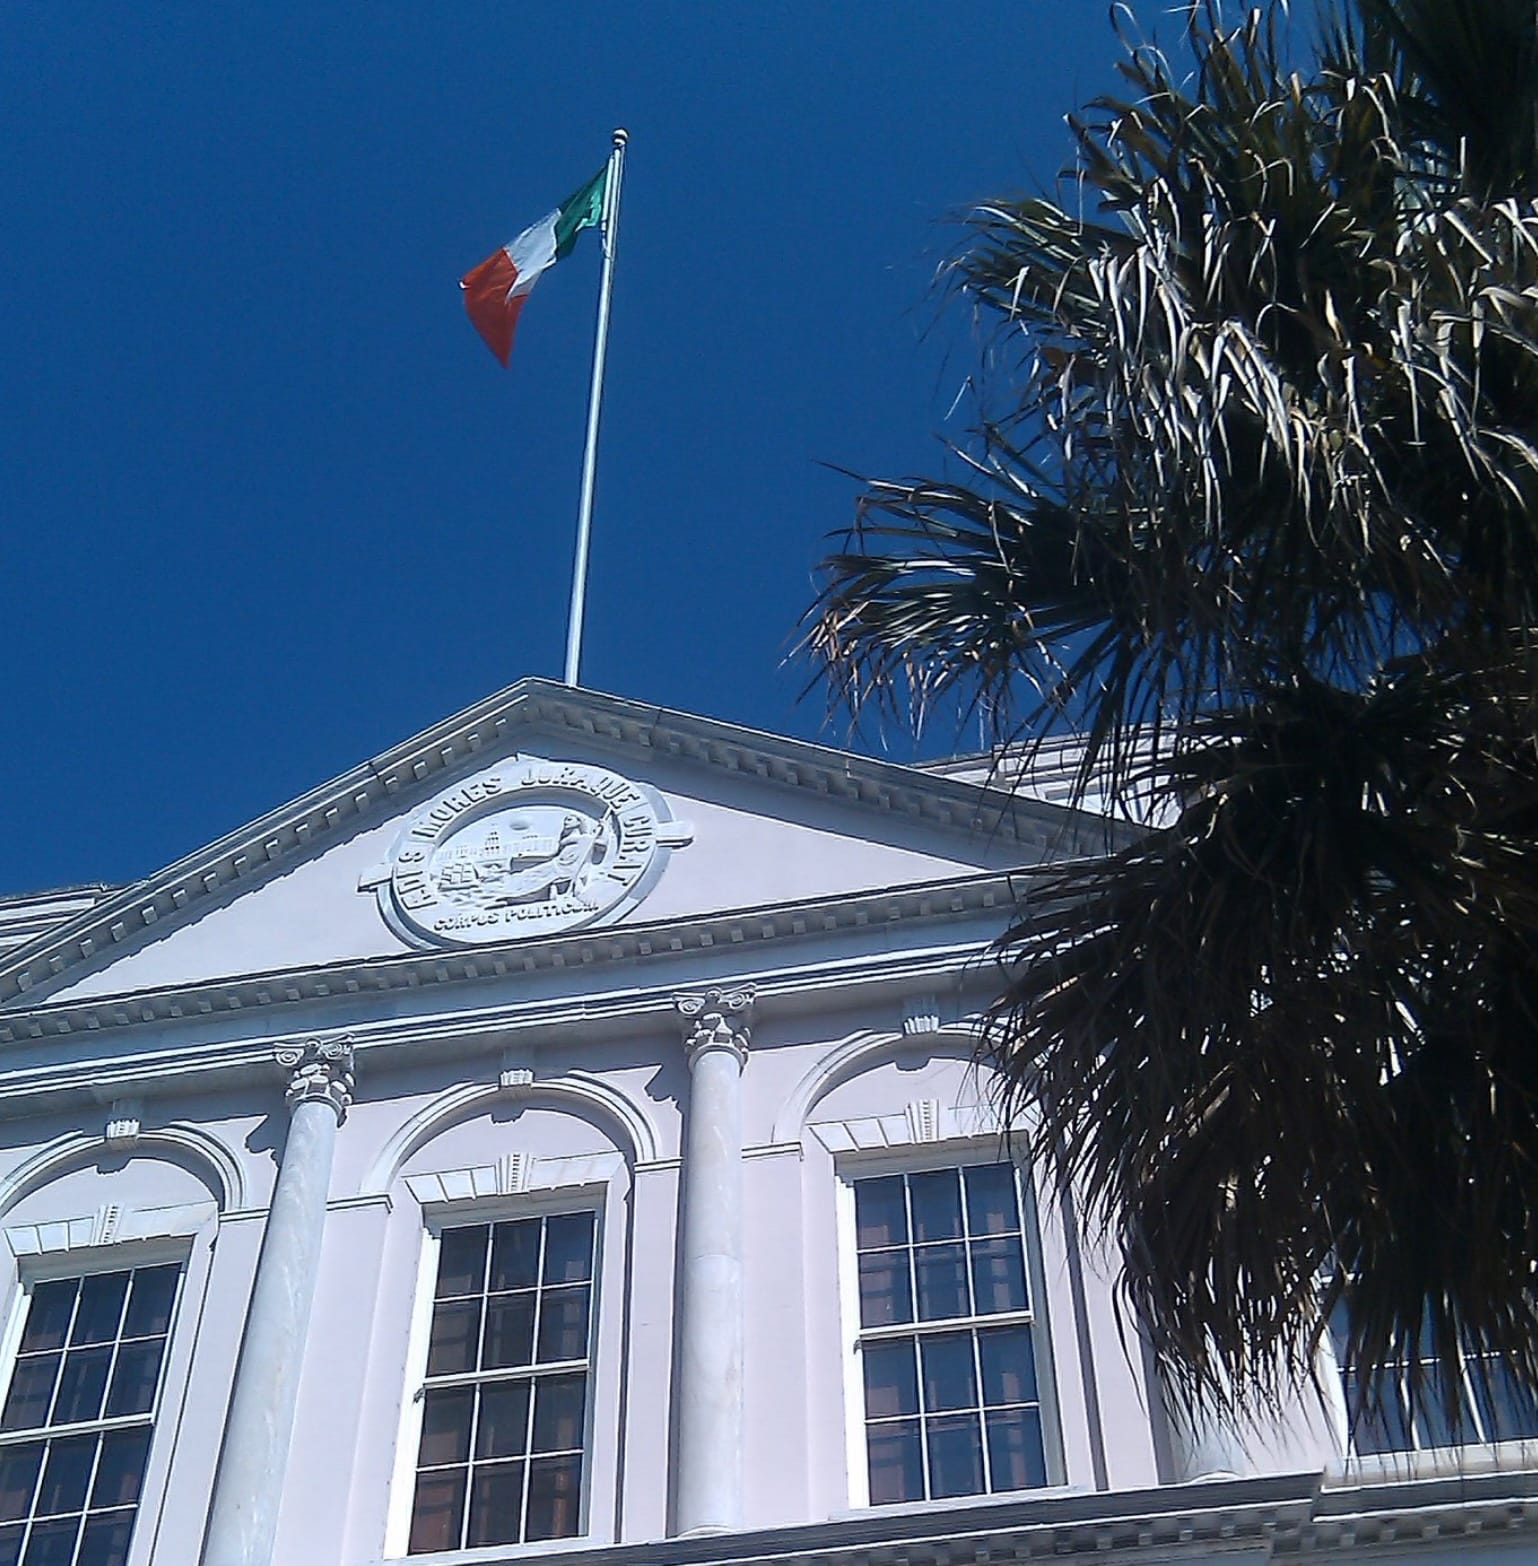 History of the Irish in Charleston